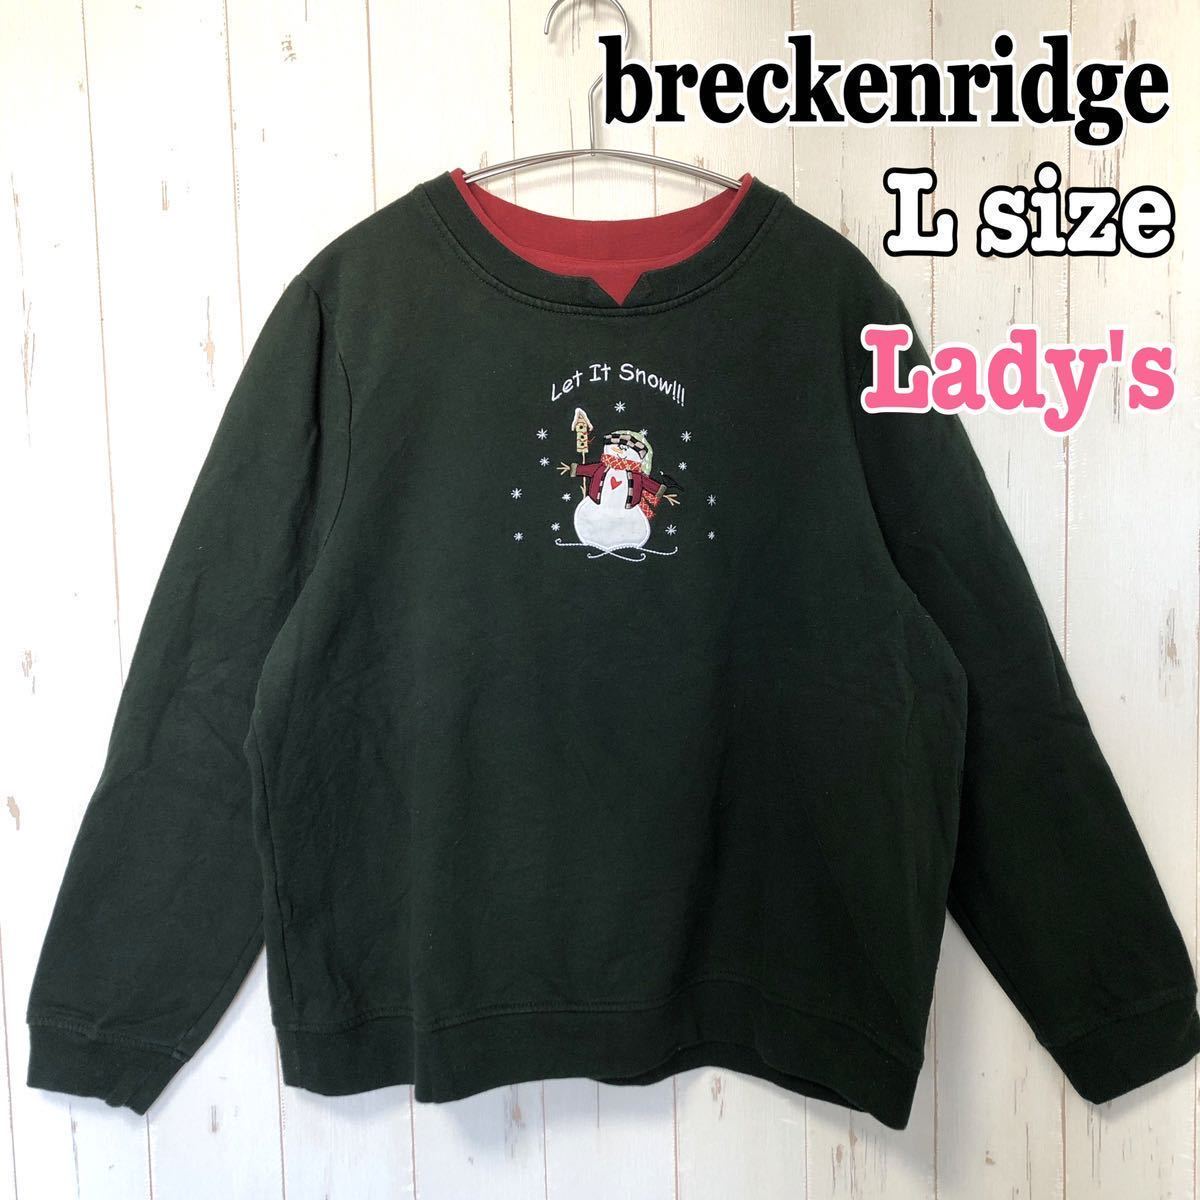 breckenridge тренировочный футболка женский снег ... вышивка длинный рукав зима большой Silhouette б/у одежда за границей б/у одежда L размер зеленый зеленый 